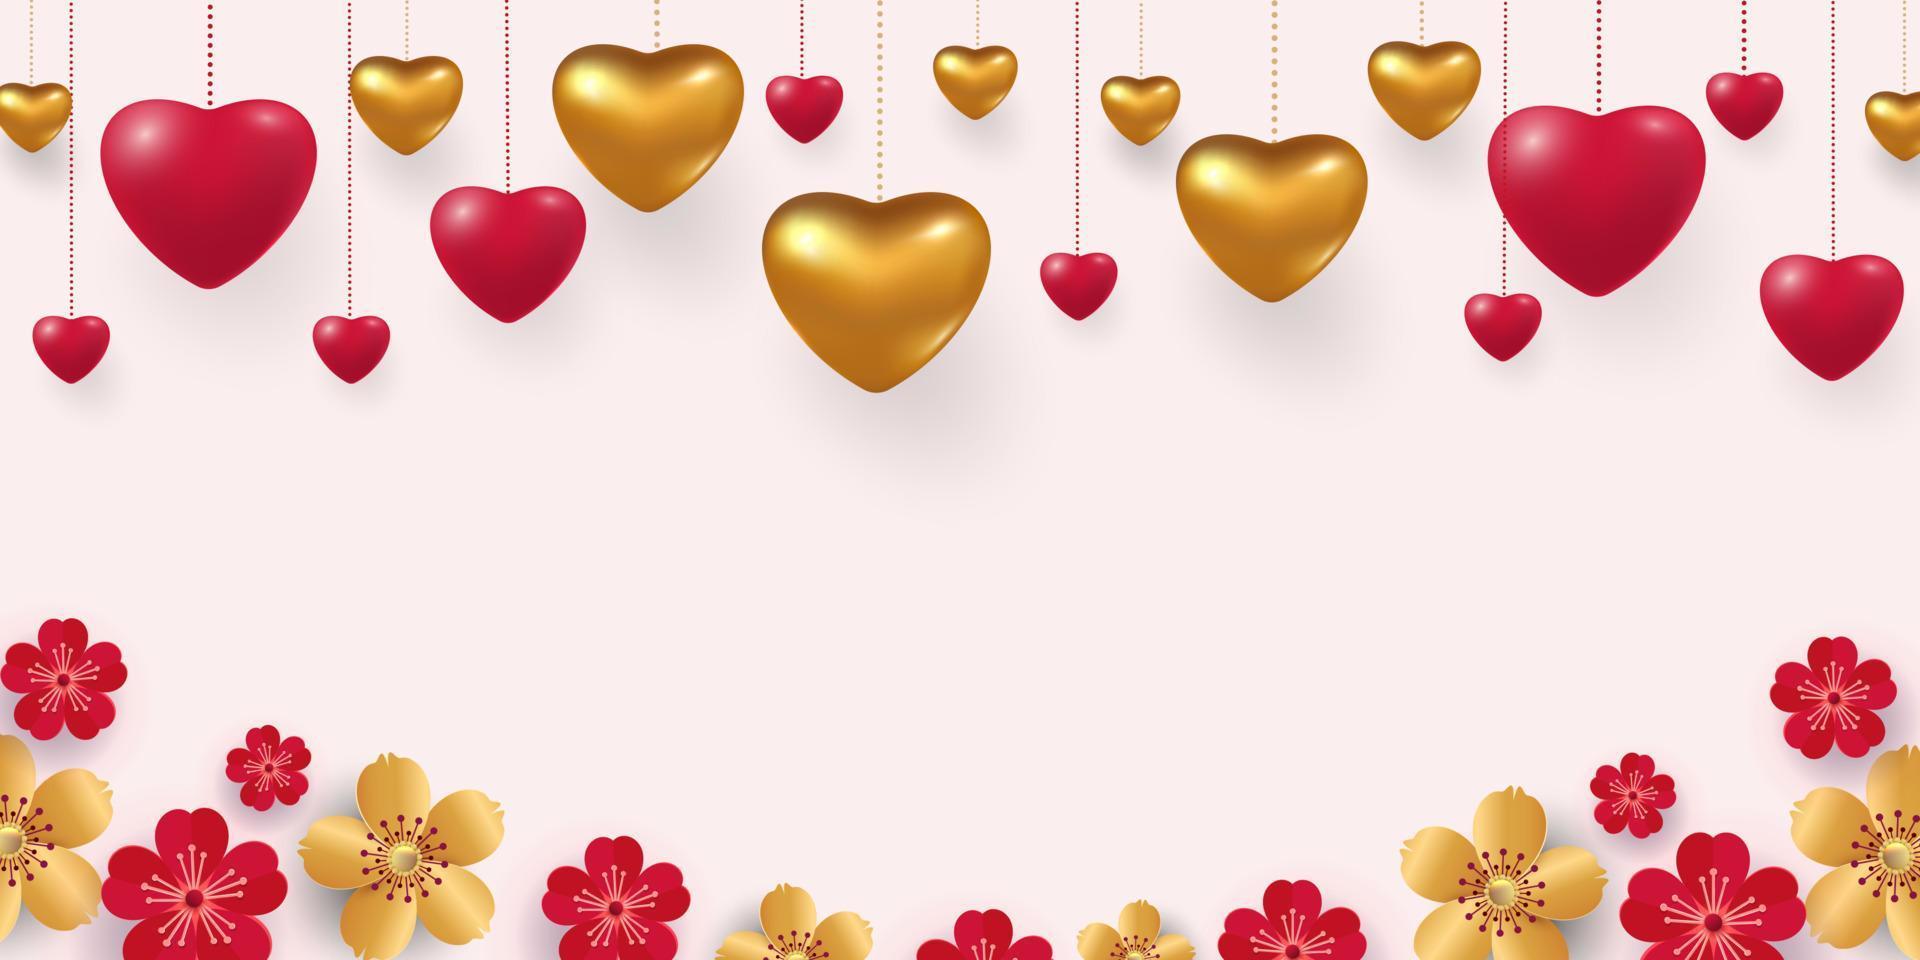 3D metallisches Gold und rote Herzen auf einem hellen roten Hintergrund. dekoratives liebeskonzept für valentinstag oder hochzeit. Verkaufsbanner. Platz für Ihren Text. Vektor